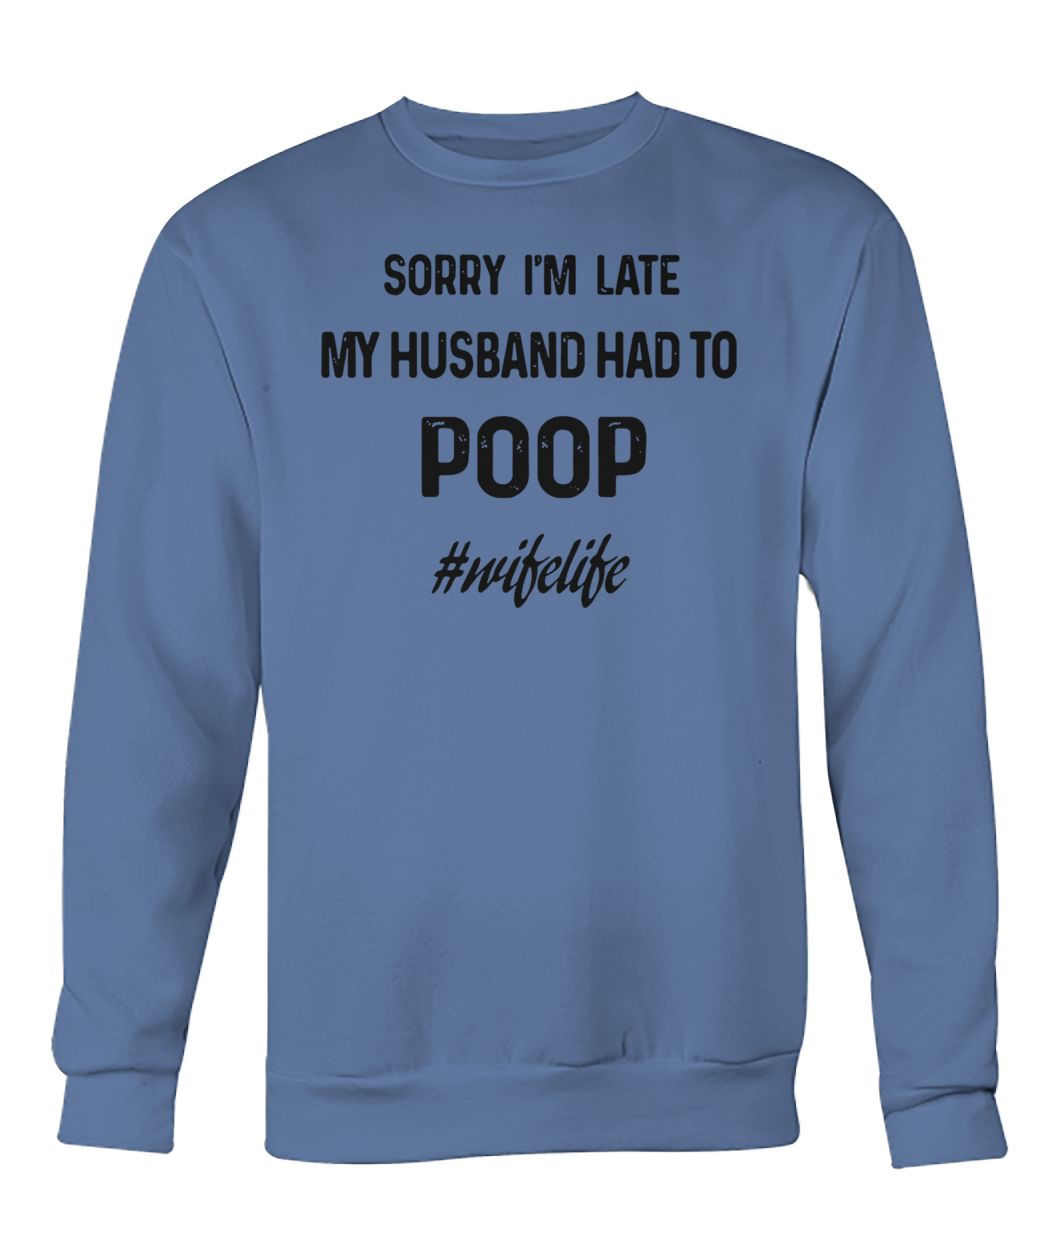 Sorry I'm late my husband had to poop wifelife crew neck sweatshirt